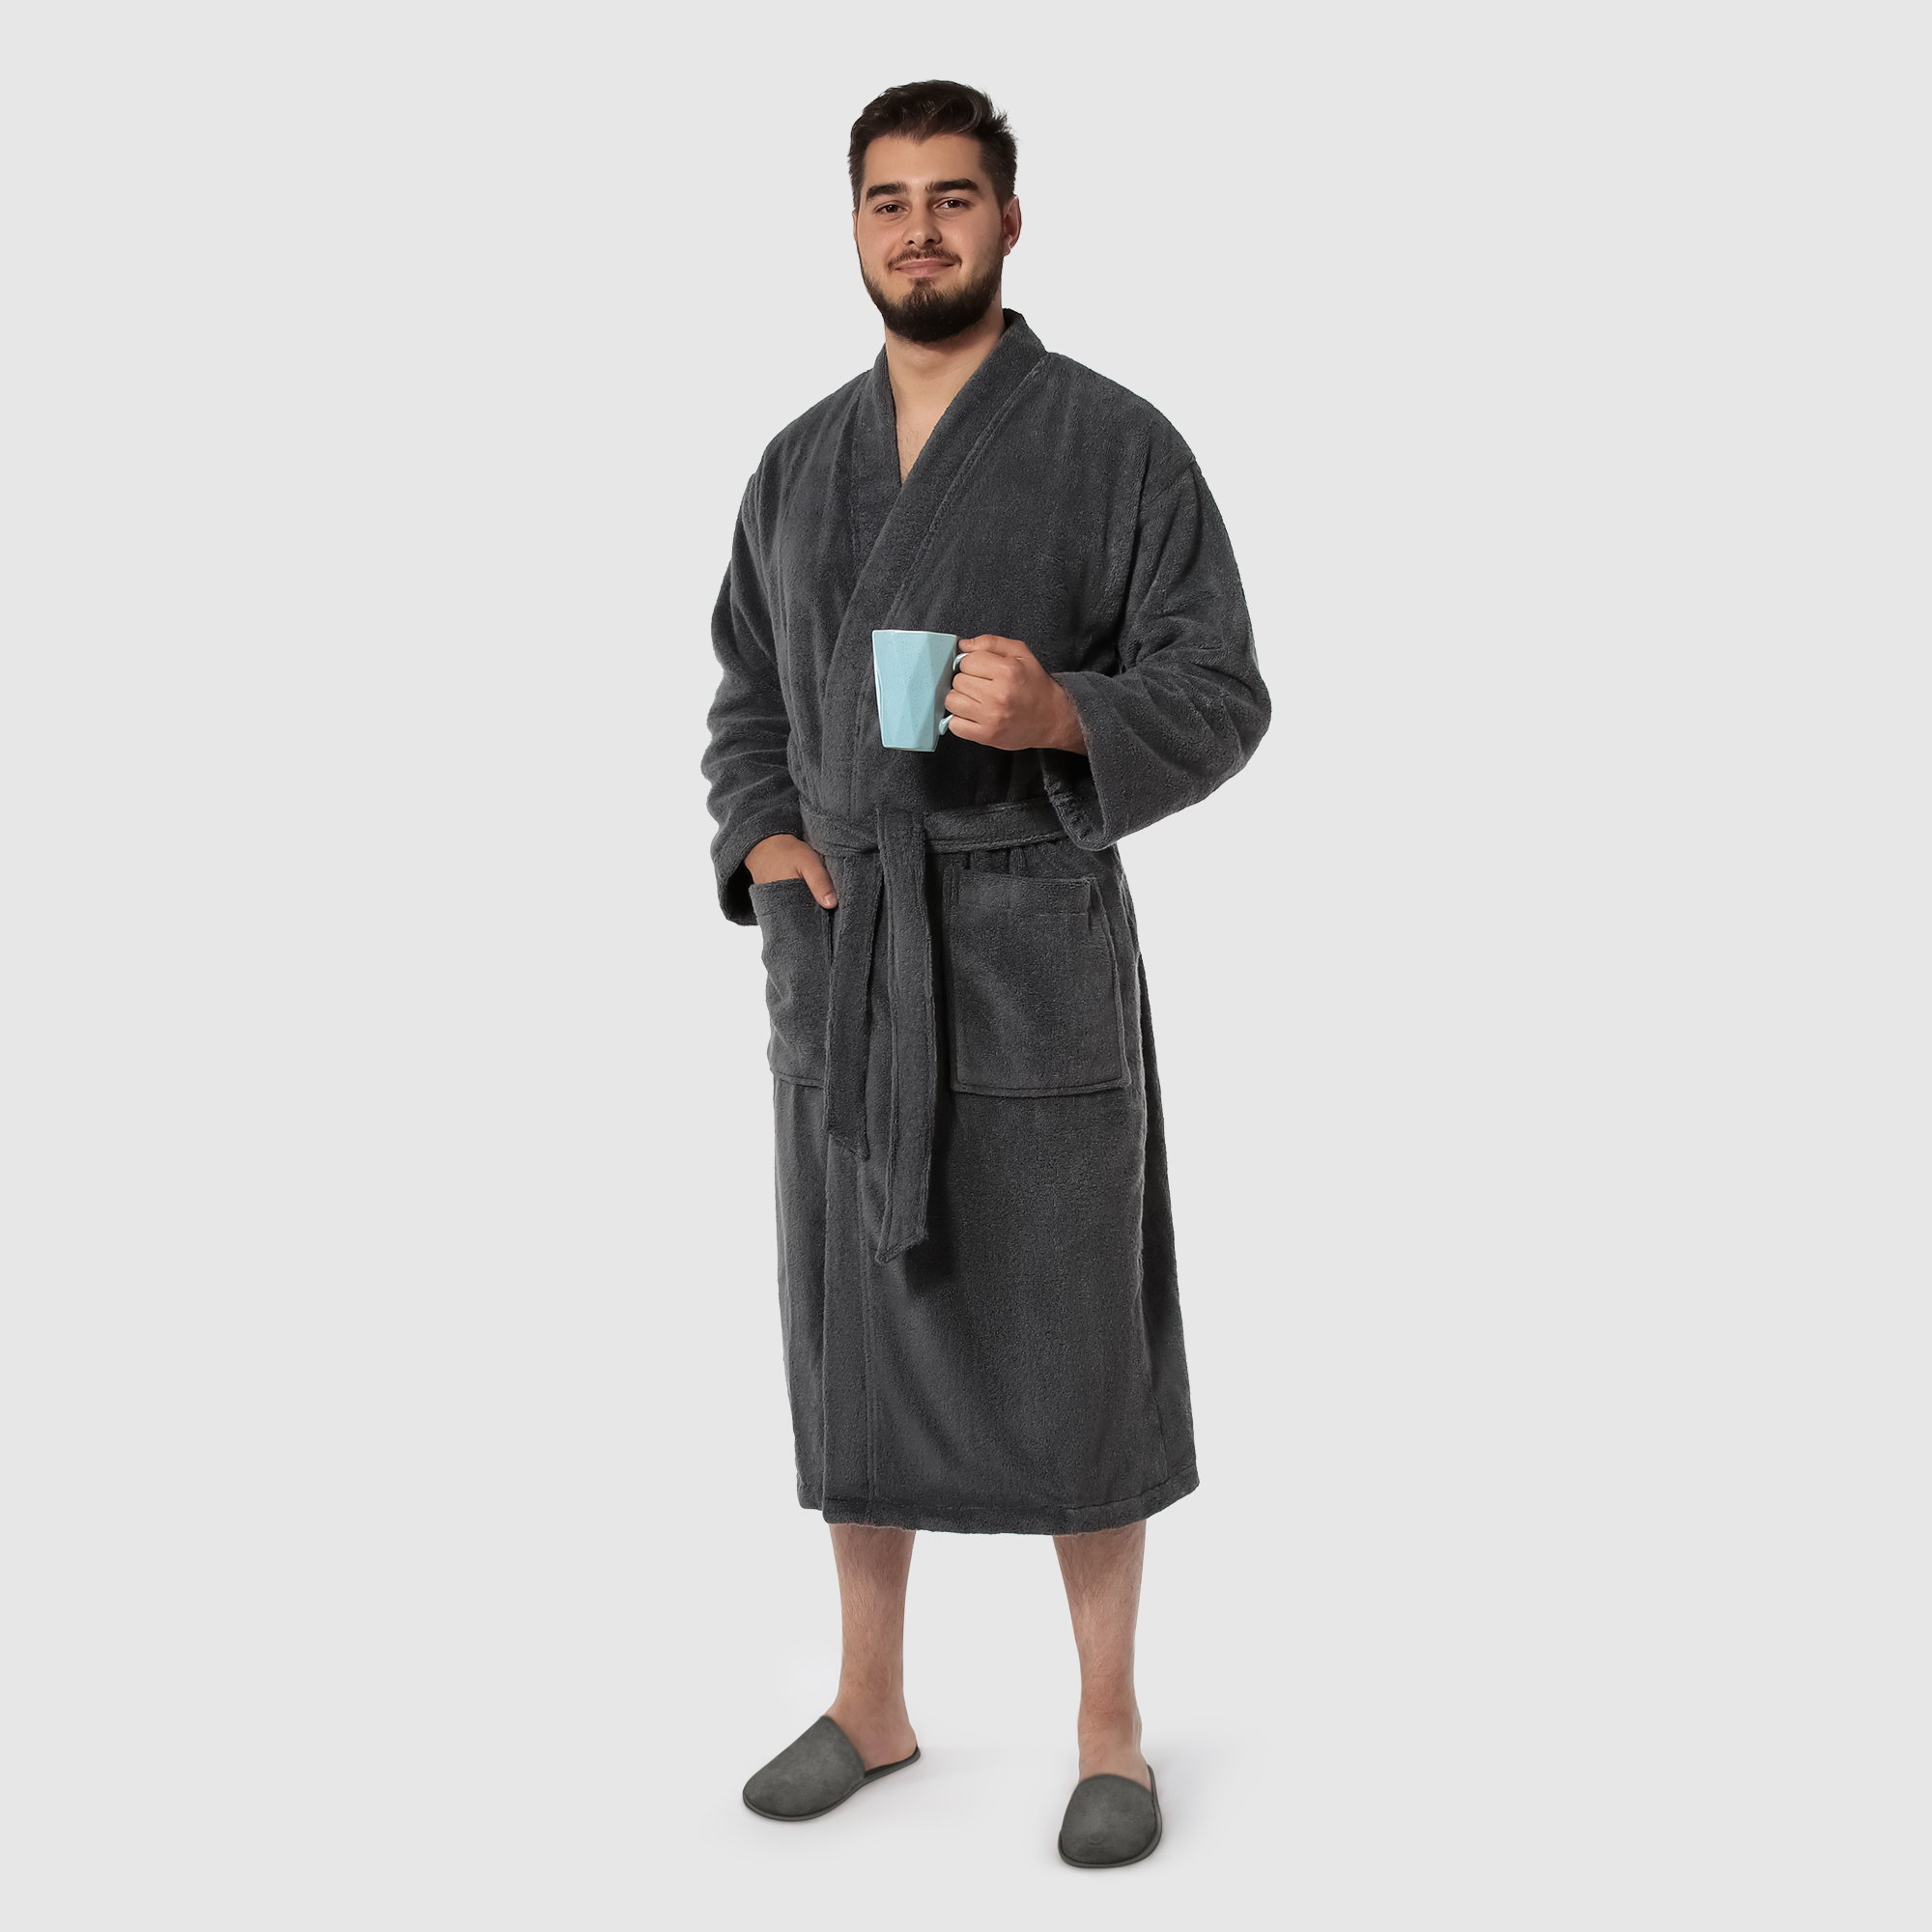 Мужской халат Maisonette Parla тёмно-серый M халат мужской asil sauna brown xxl вафельный с капюшоном